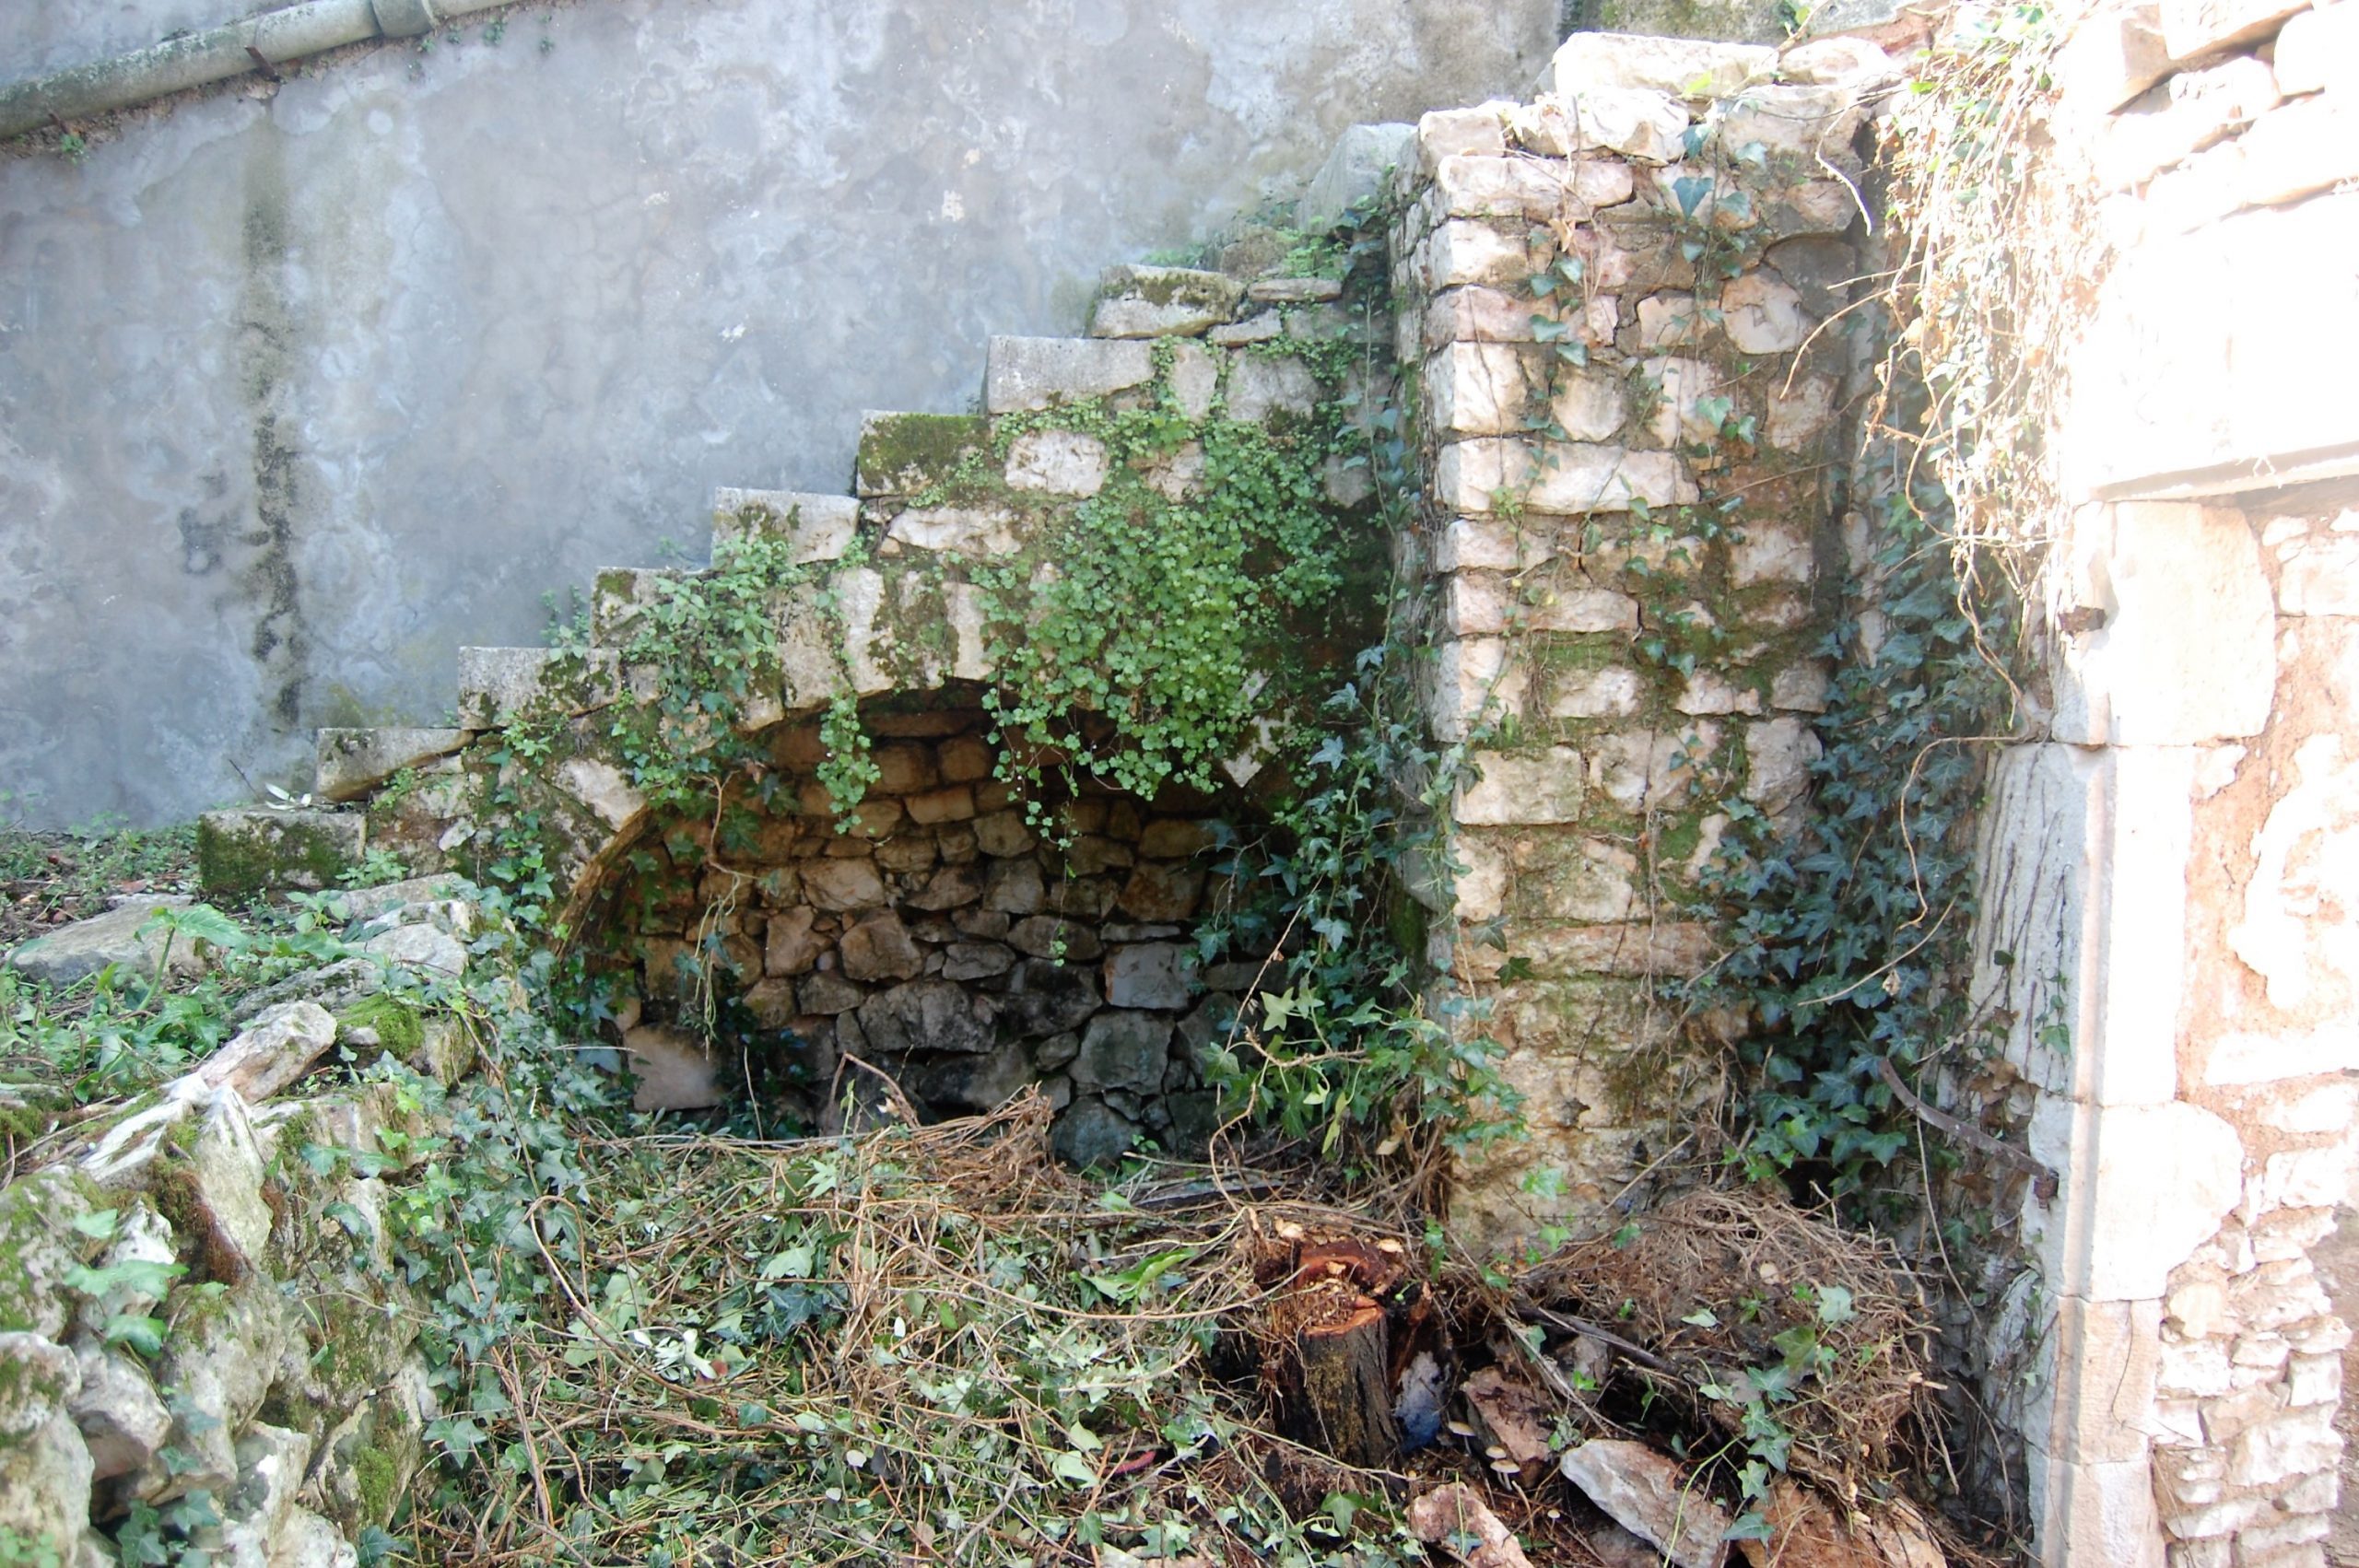 Exterior facade of ruin for sale in Ithaca Greece, Vathi